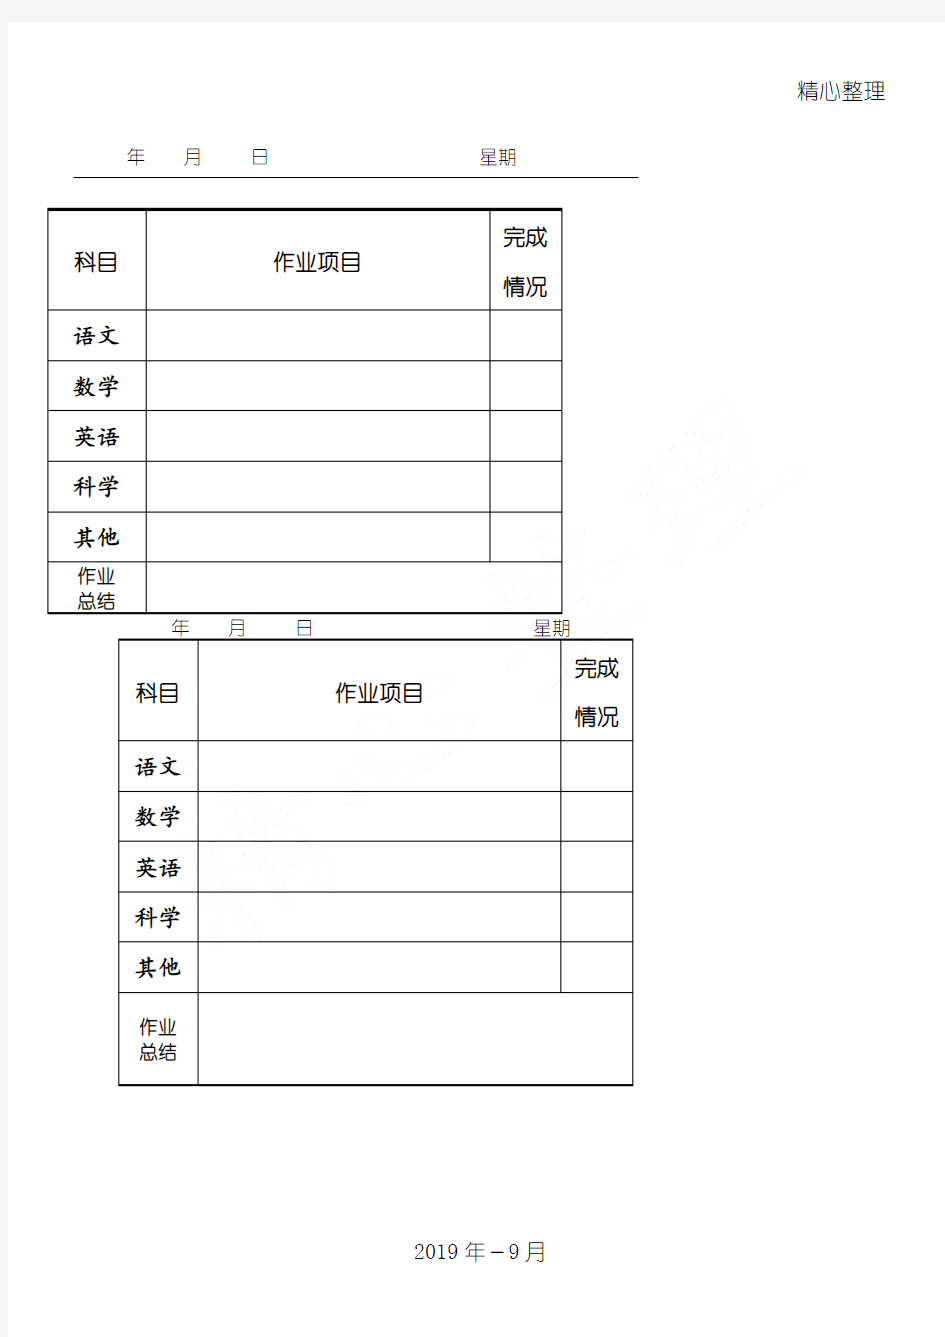 重点小学生作业规程指导记录本(A4打印版)